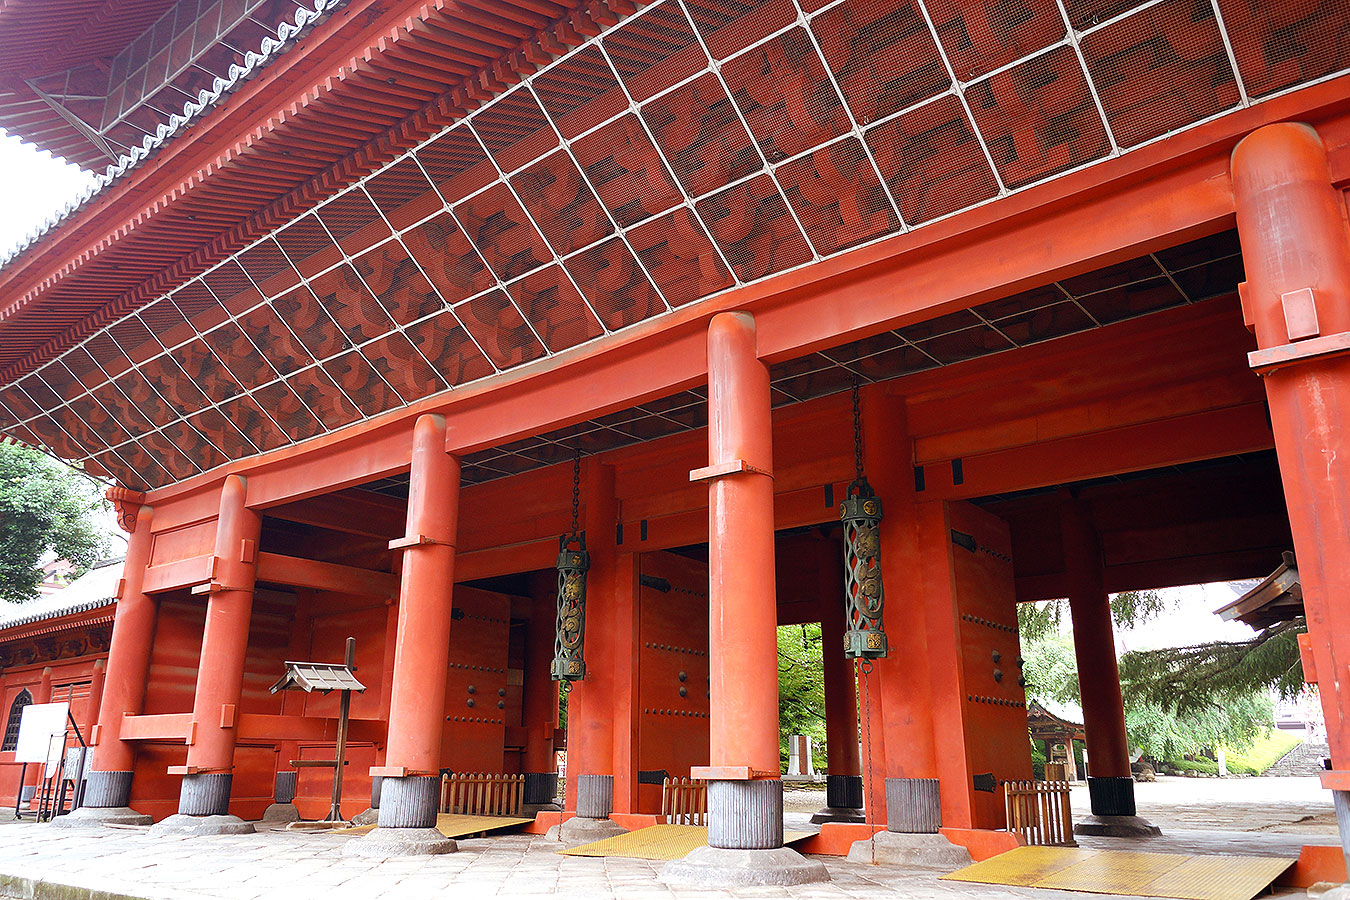 zojoji, zojoji templi, tempio zojoji, tokyo, tempio tokyo, tokyo temple, japan italy bridge